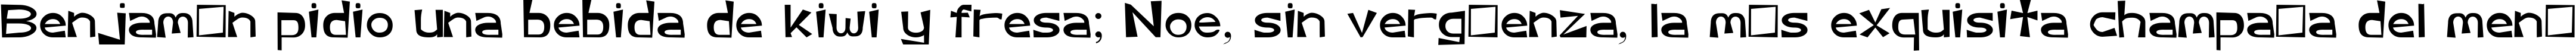 Пример написания шрифтом Asshole Basic Sans Serif Font текста на испанском